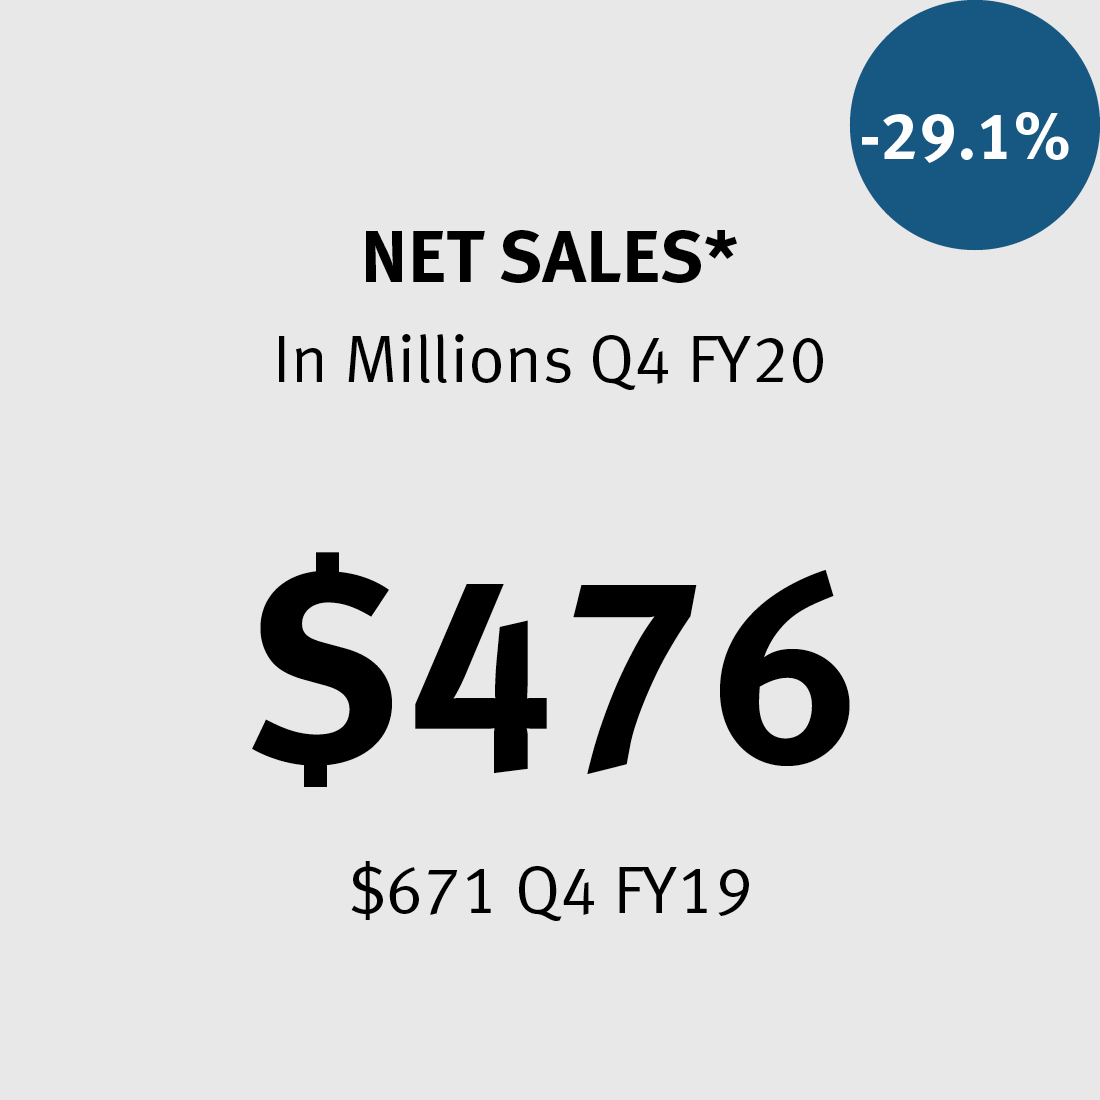 Net Sales * $476M ($671 in 2019) -29.1%